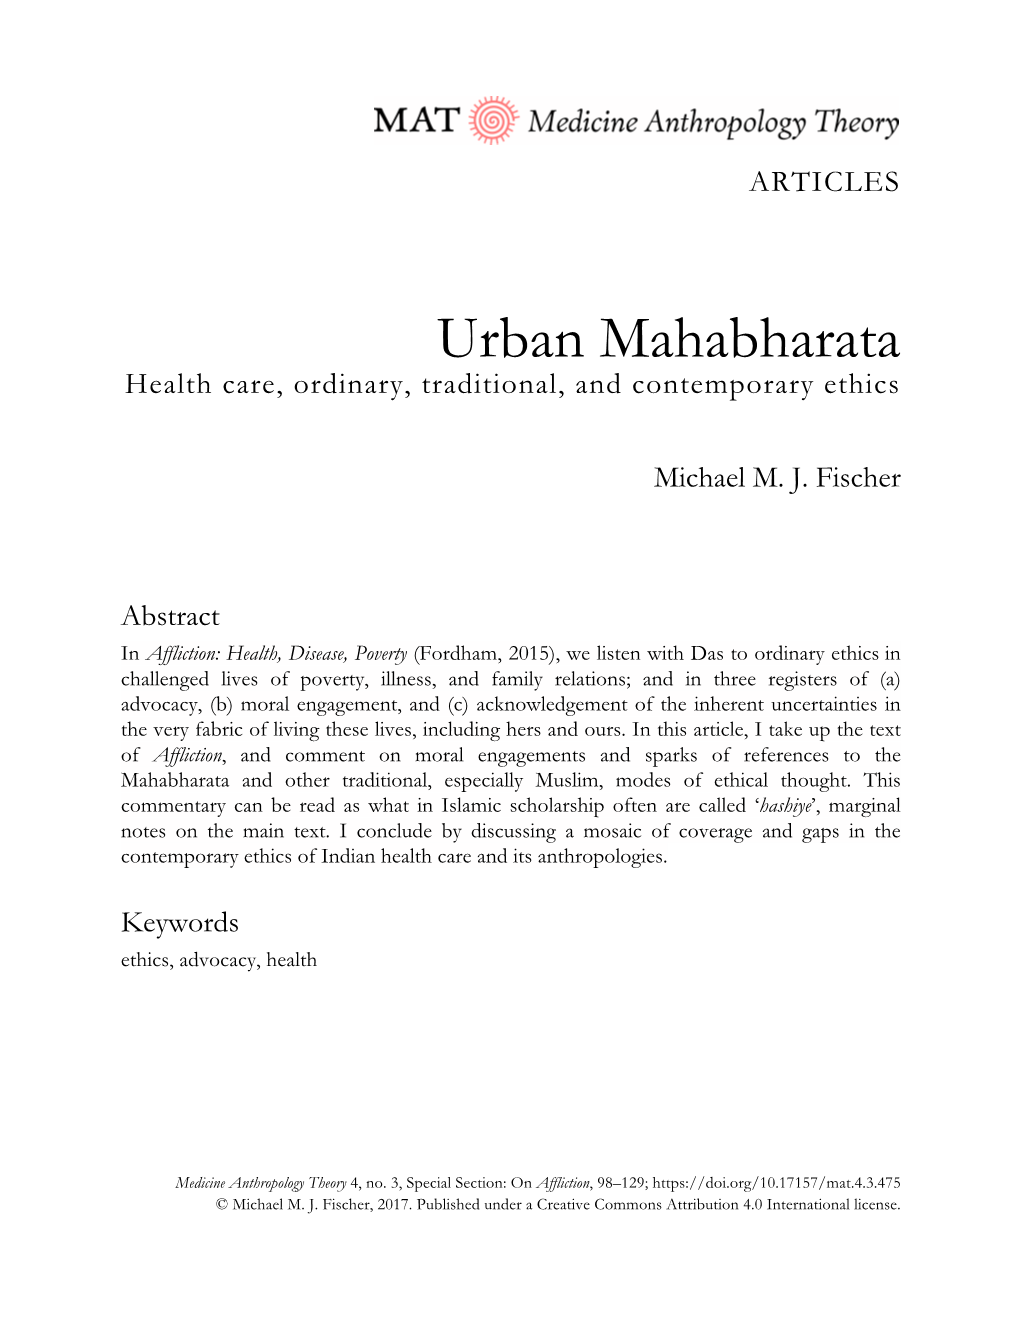 Urban Mahabharata Health Care, Ordinary, Traditional, and Contemporary Ethics